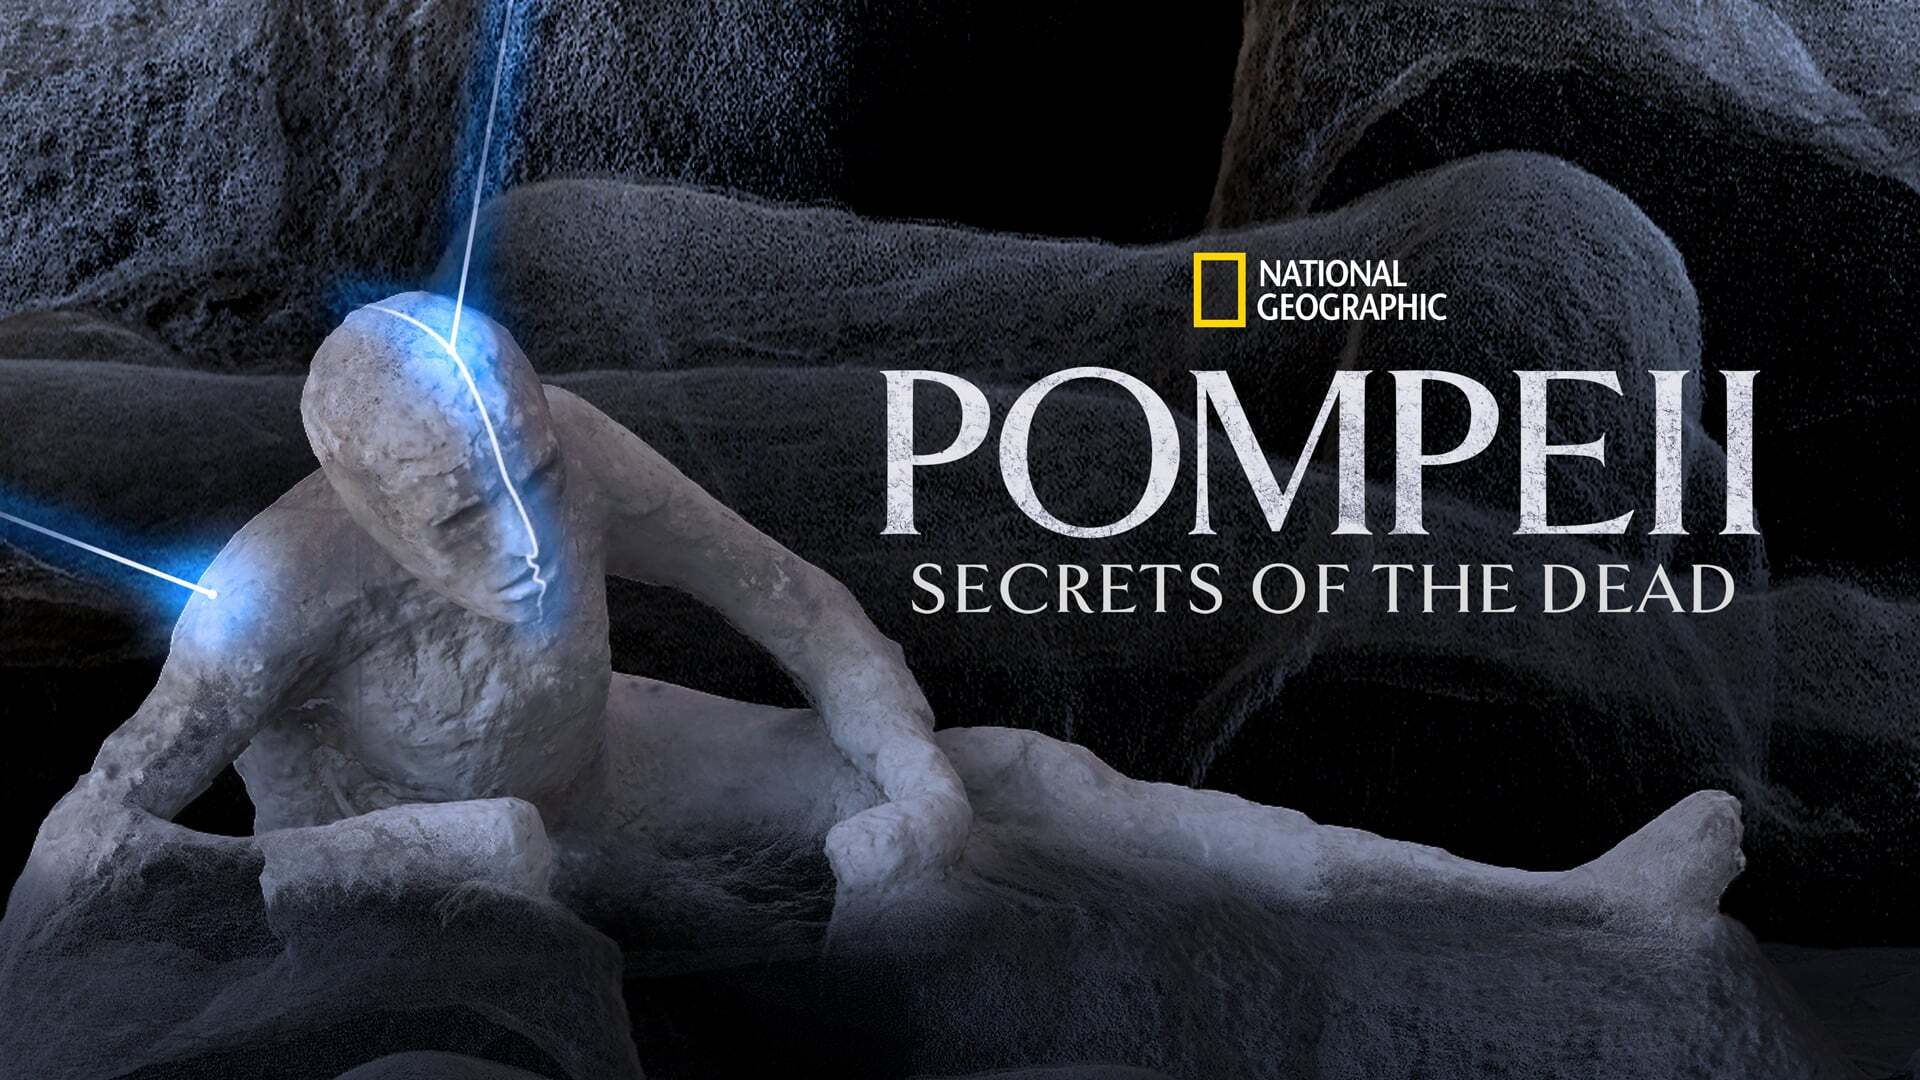 პომპეი: მკვდრების საიდუმლოებები / Pompeii: Secrets of the Dead